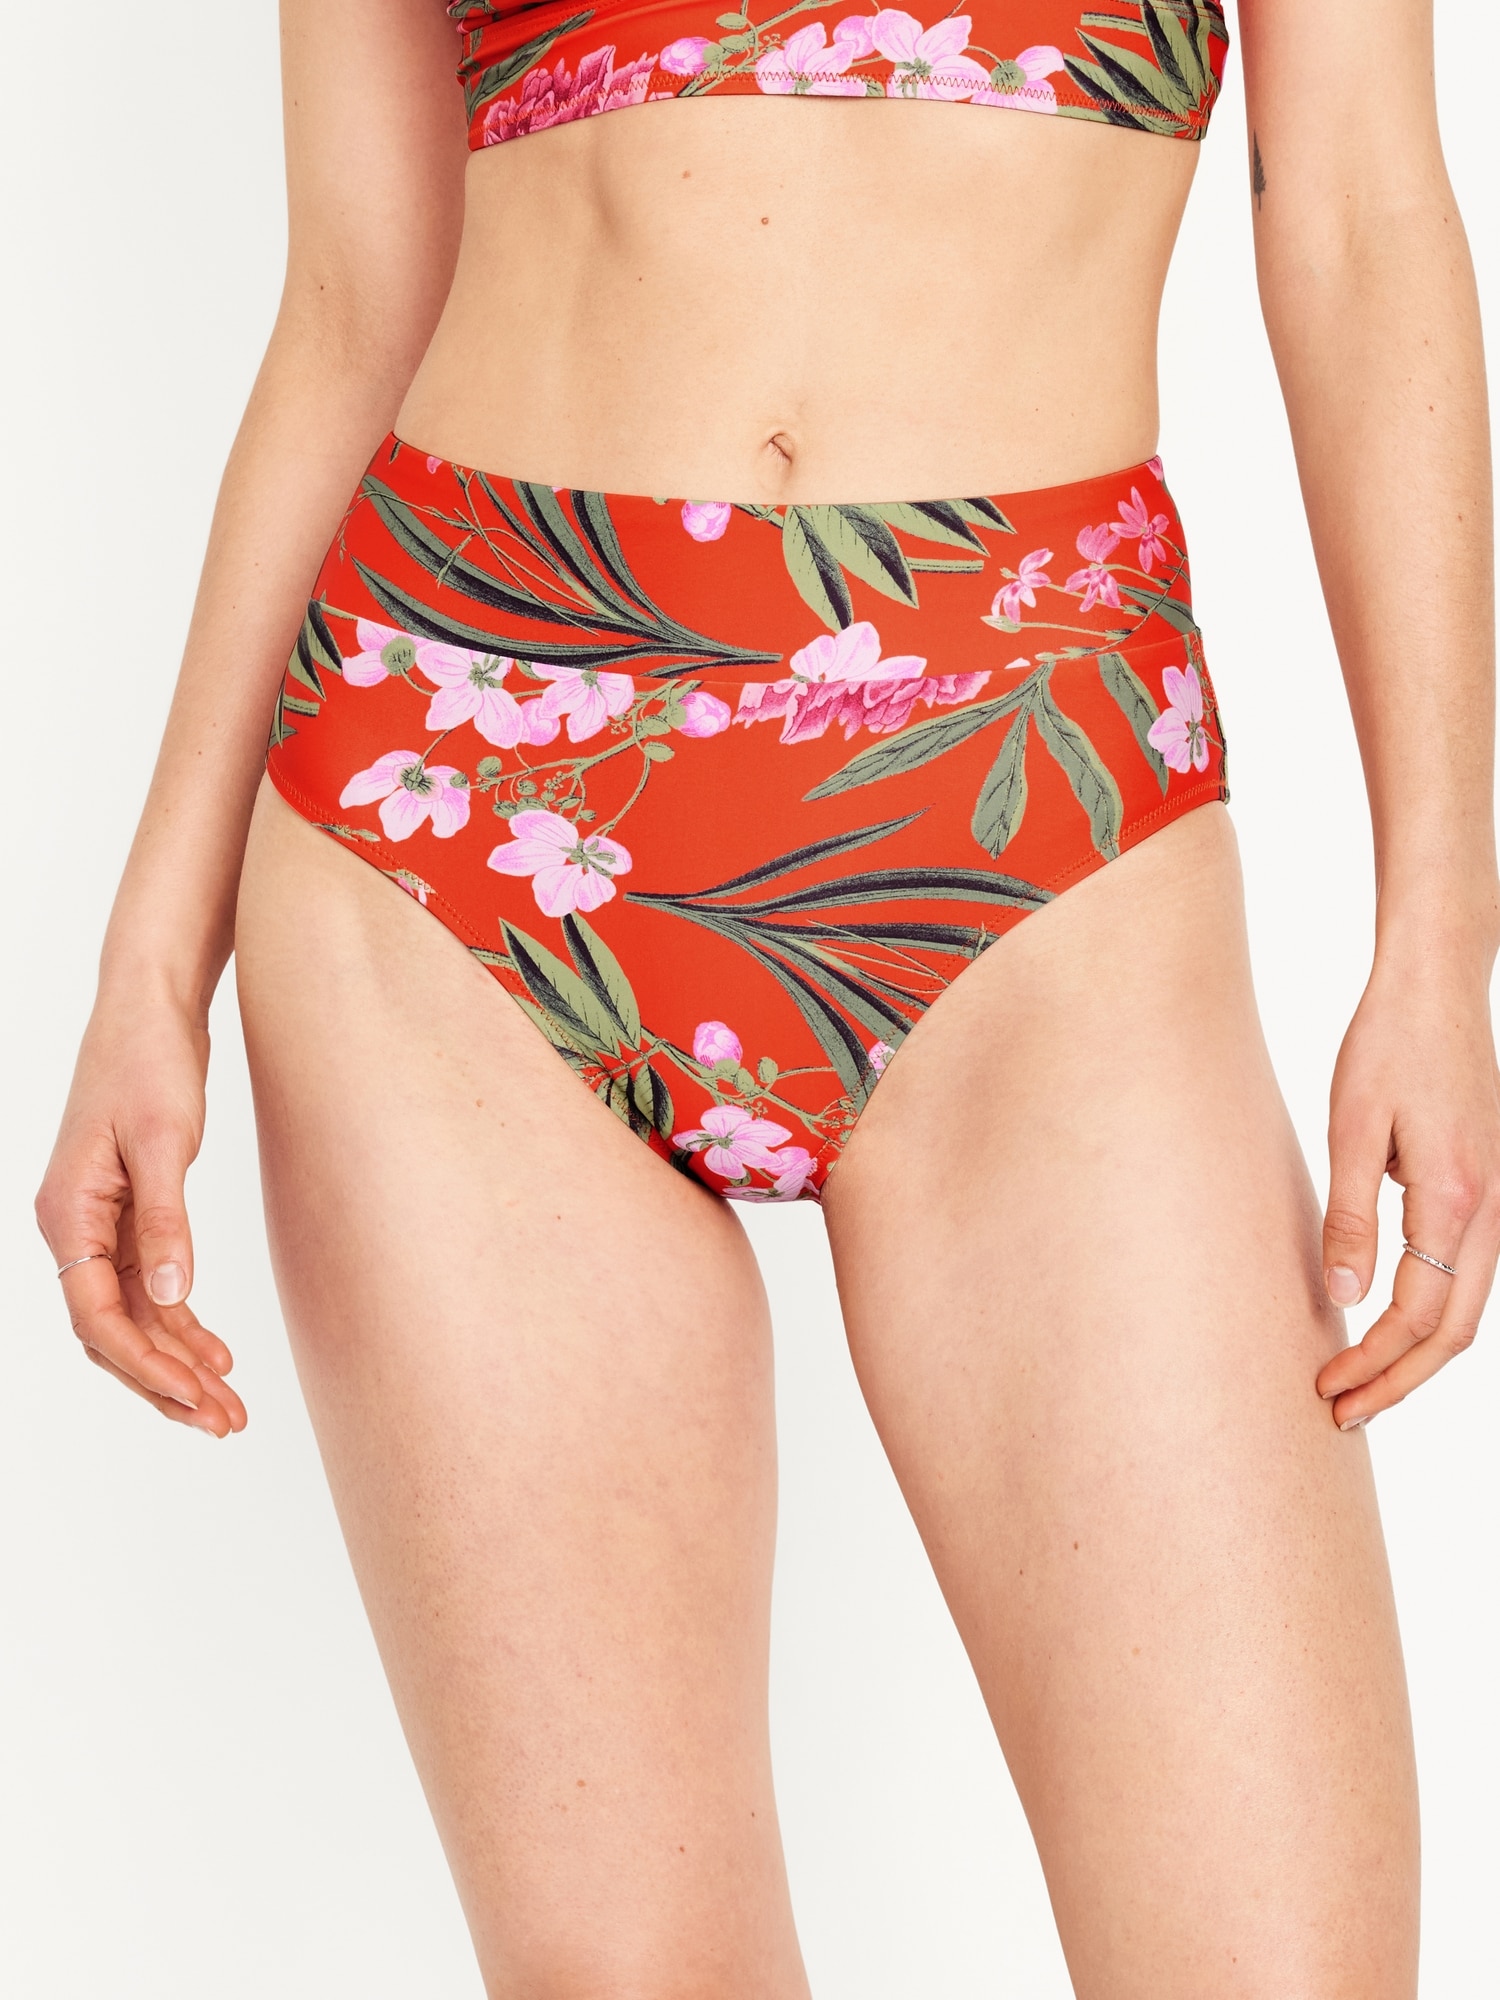 Women's Red Floral Bikini Bottoms - Women's Swim Wear